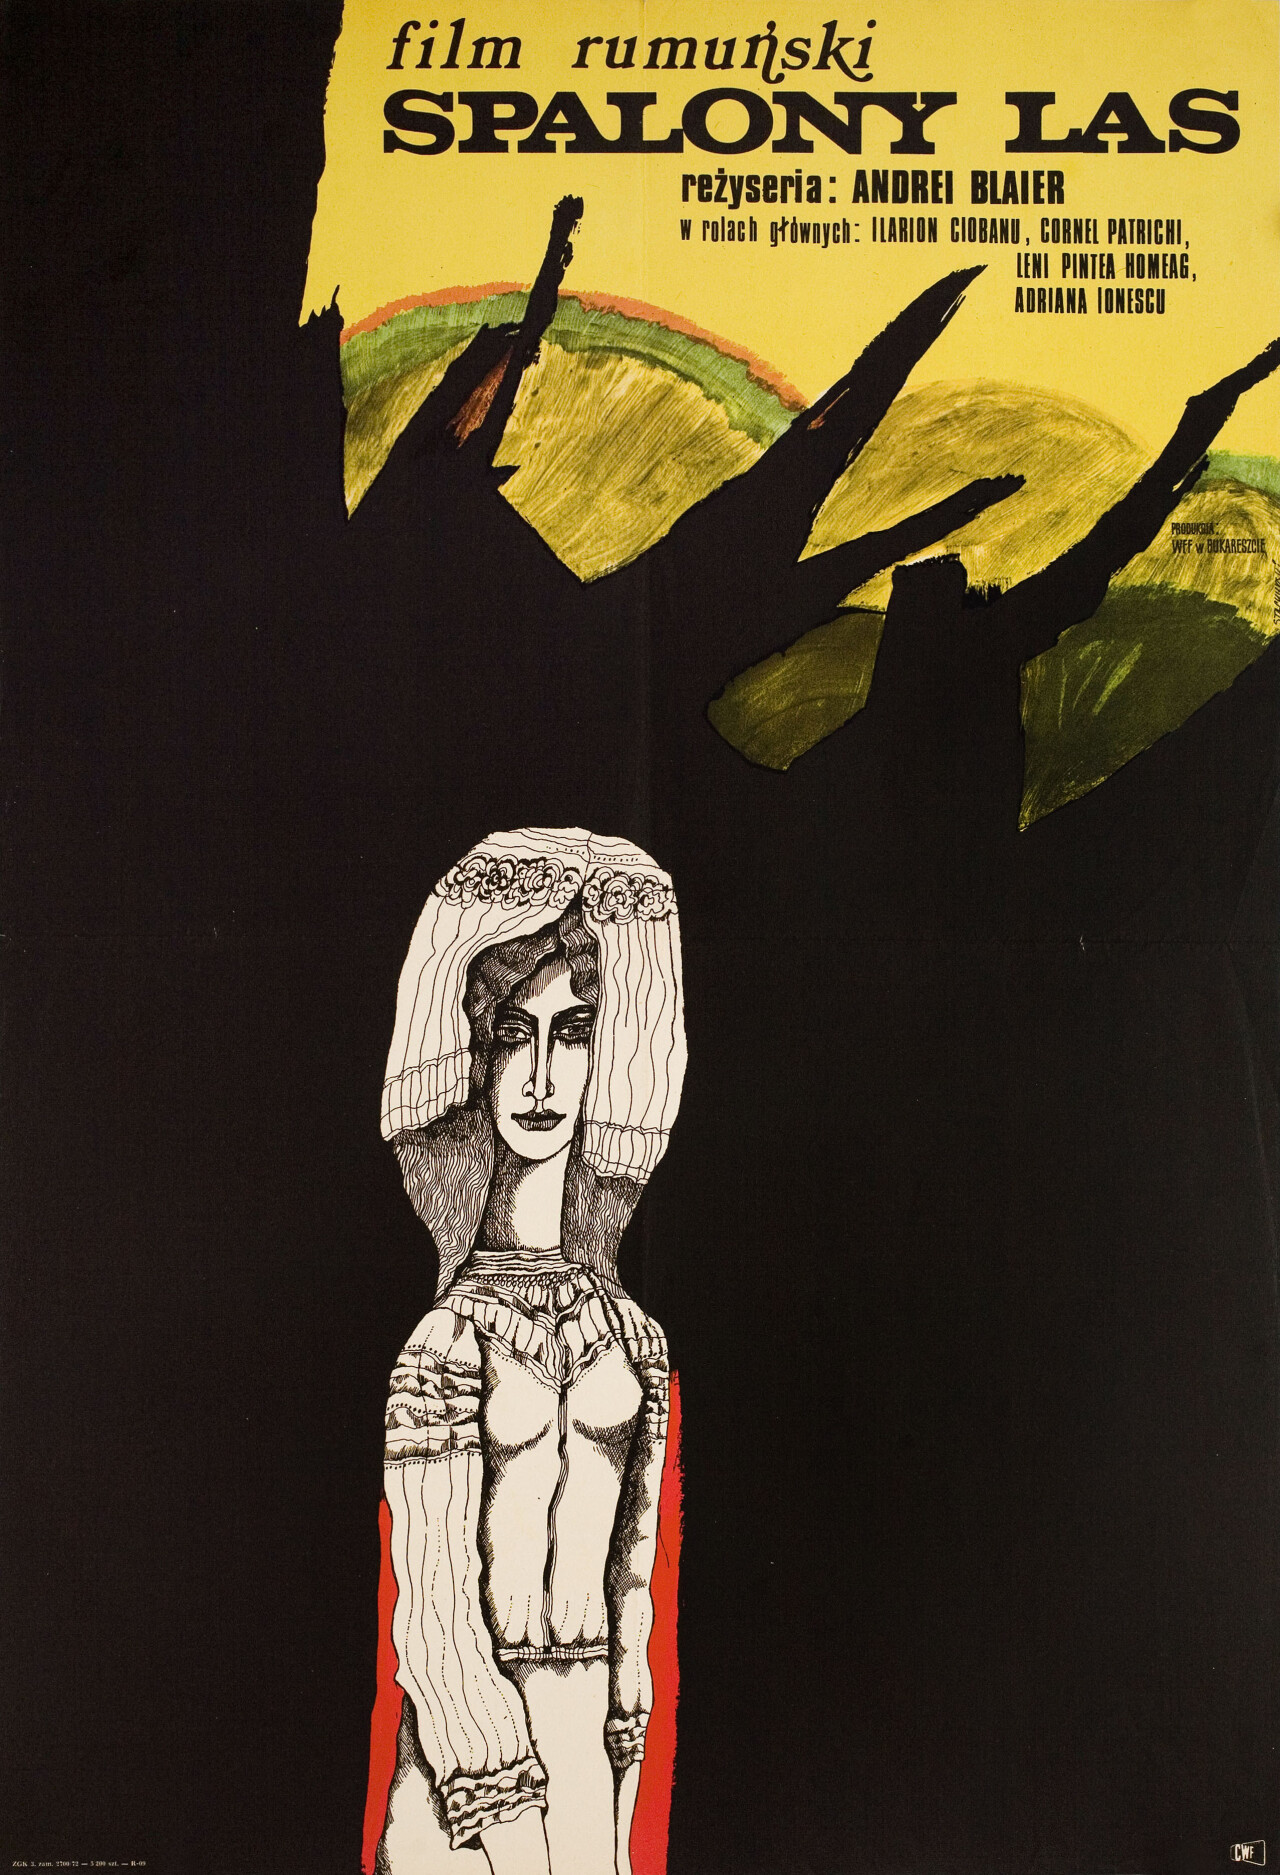 Потерянный лес (The Lost Forest, 1972), режиссёр Андрей Блайер, минималистичный постер к фильму (Польша, 1972 год), автор Мариан Стачурски